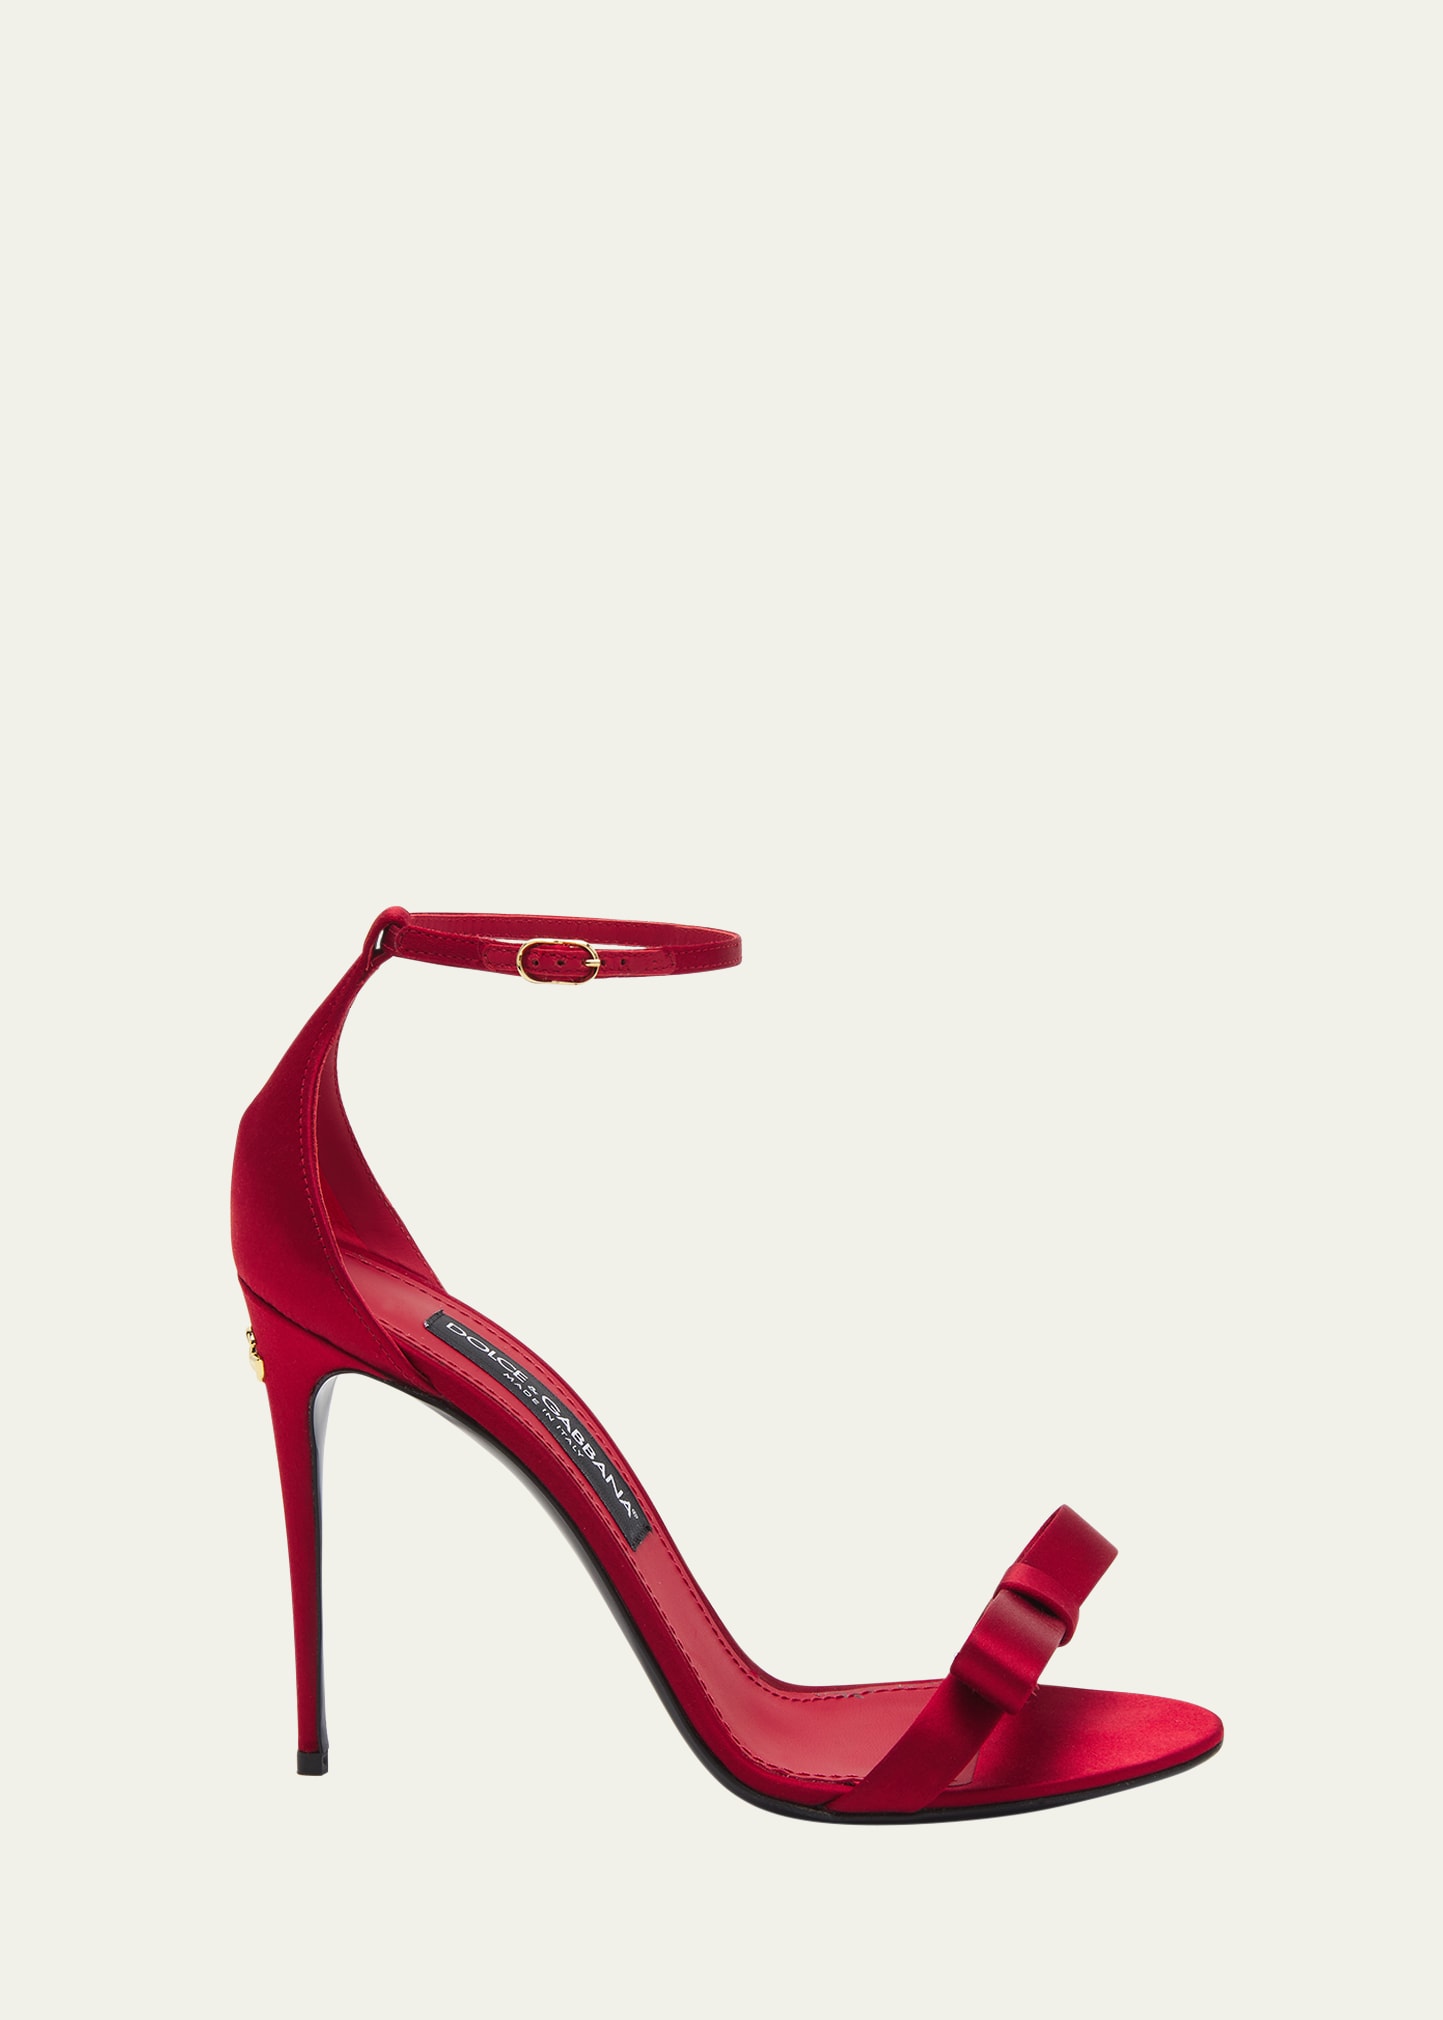 Dolce & Gabbana Satin Bow Stiletto Heels In Dark Red